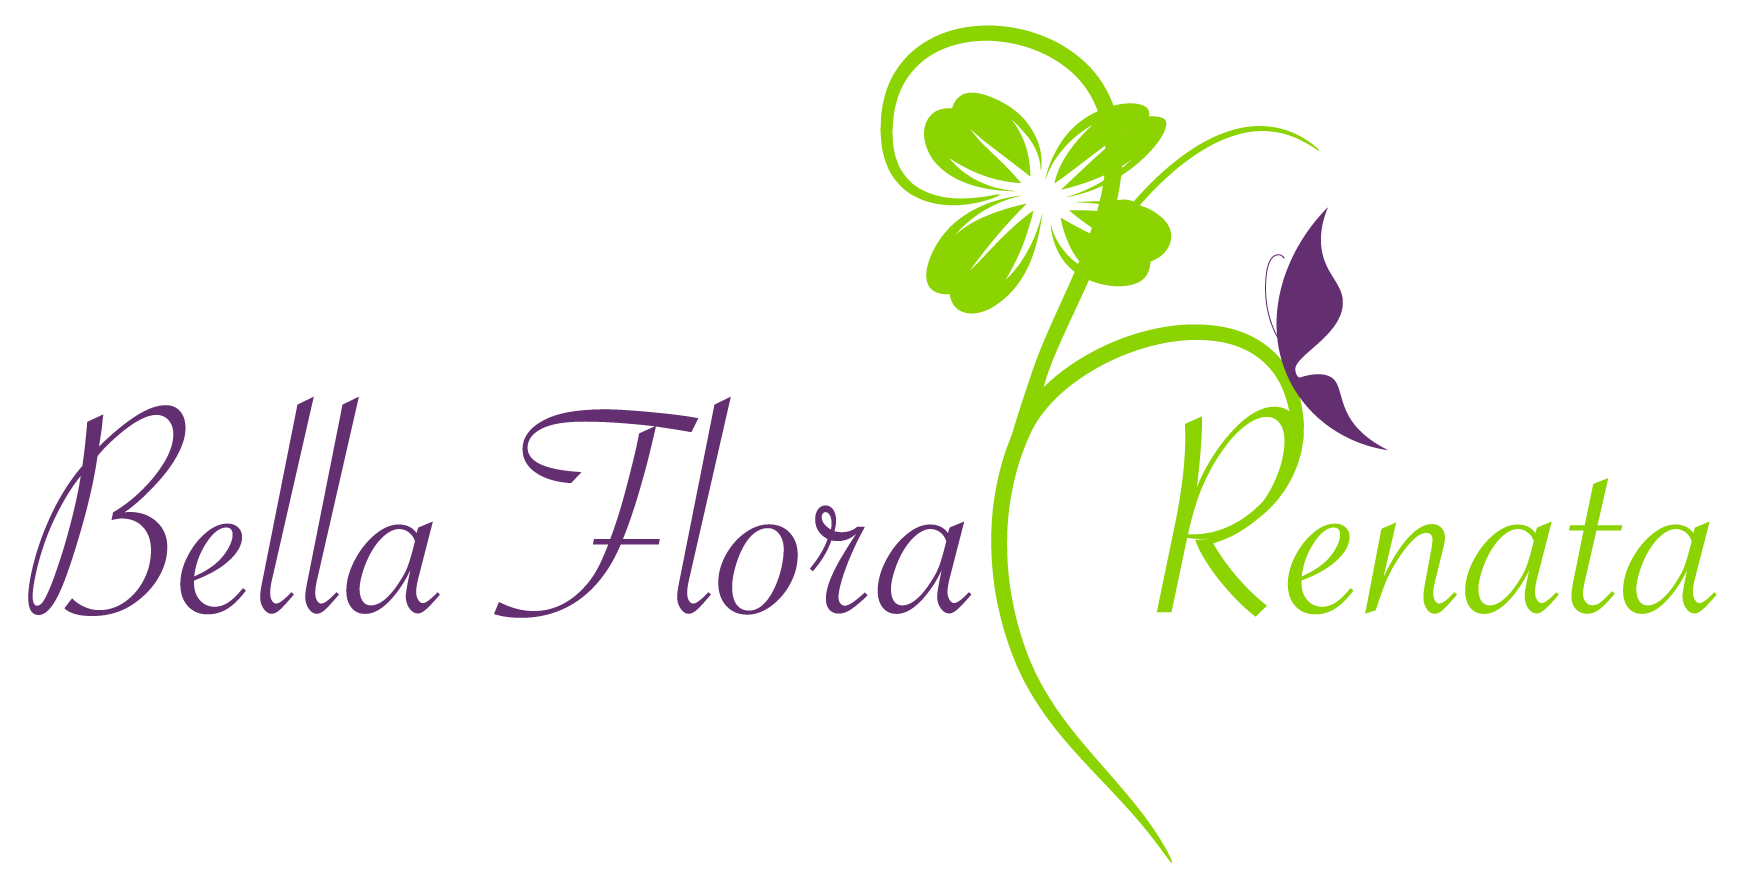 (c) Bella-flora-renata.de